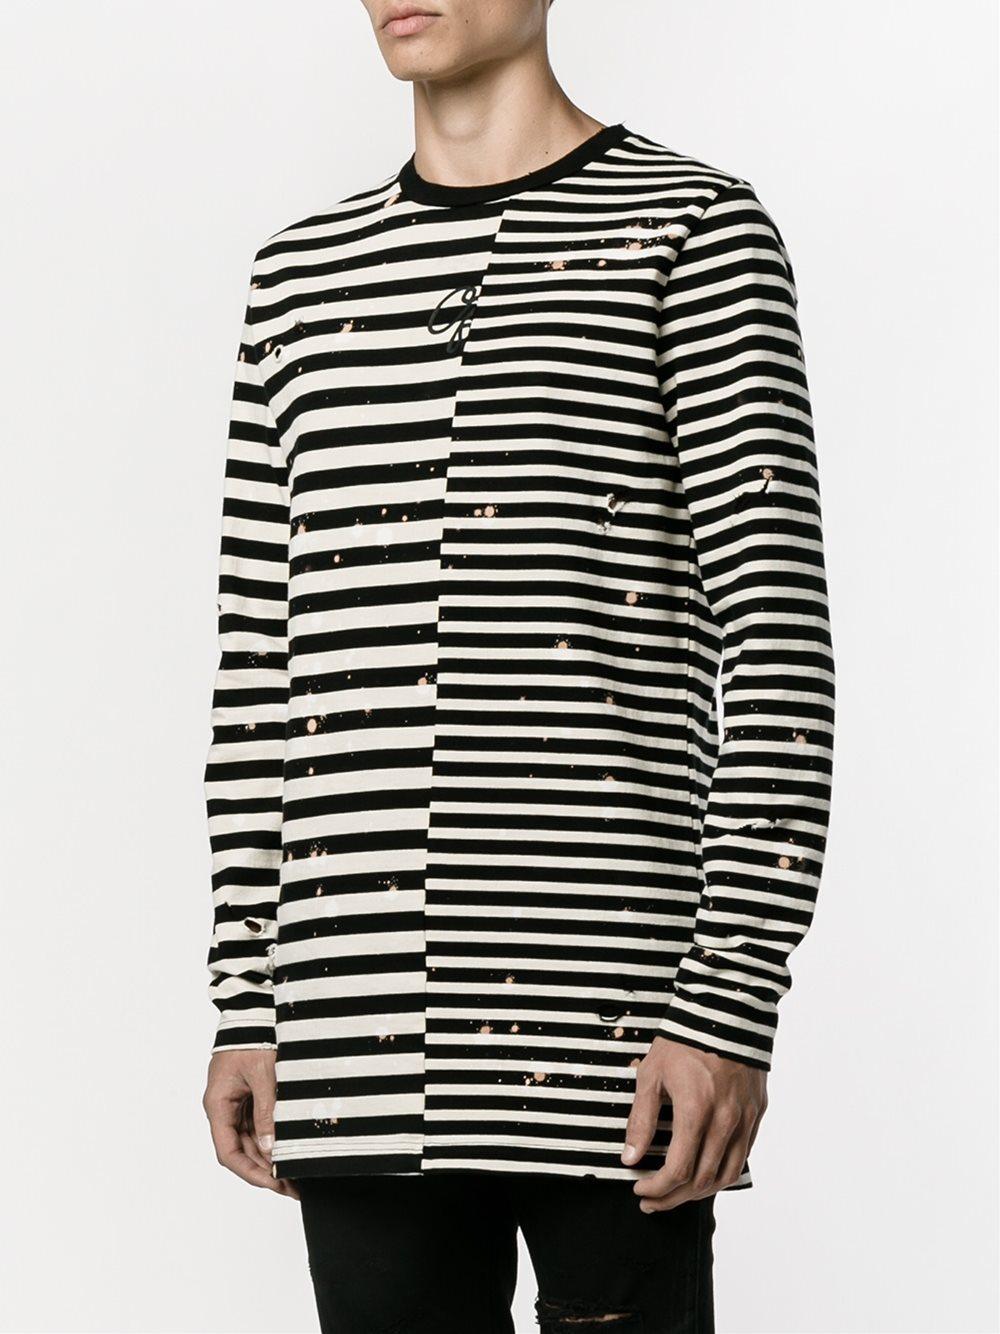 Off-White Virgil Abloh Contrast Stripe T-shirt in Black for Men | Lyst